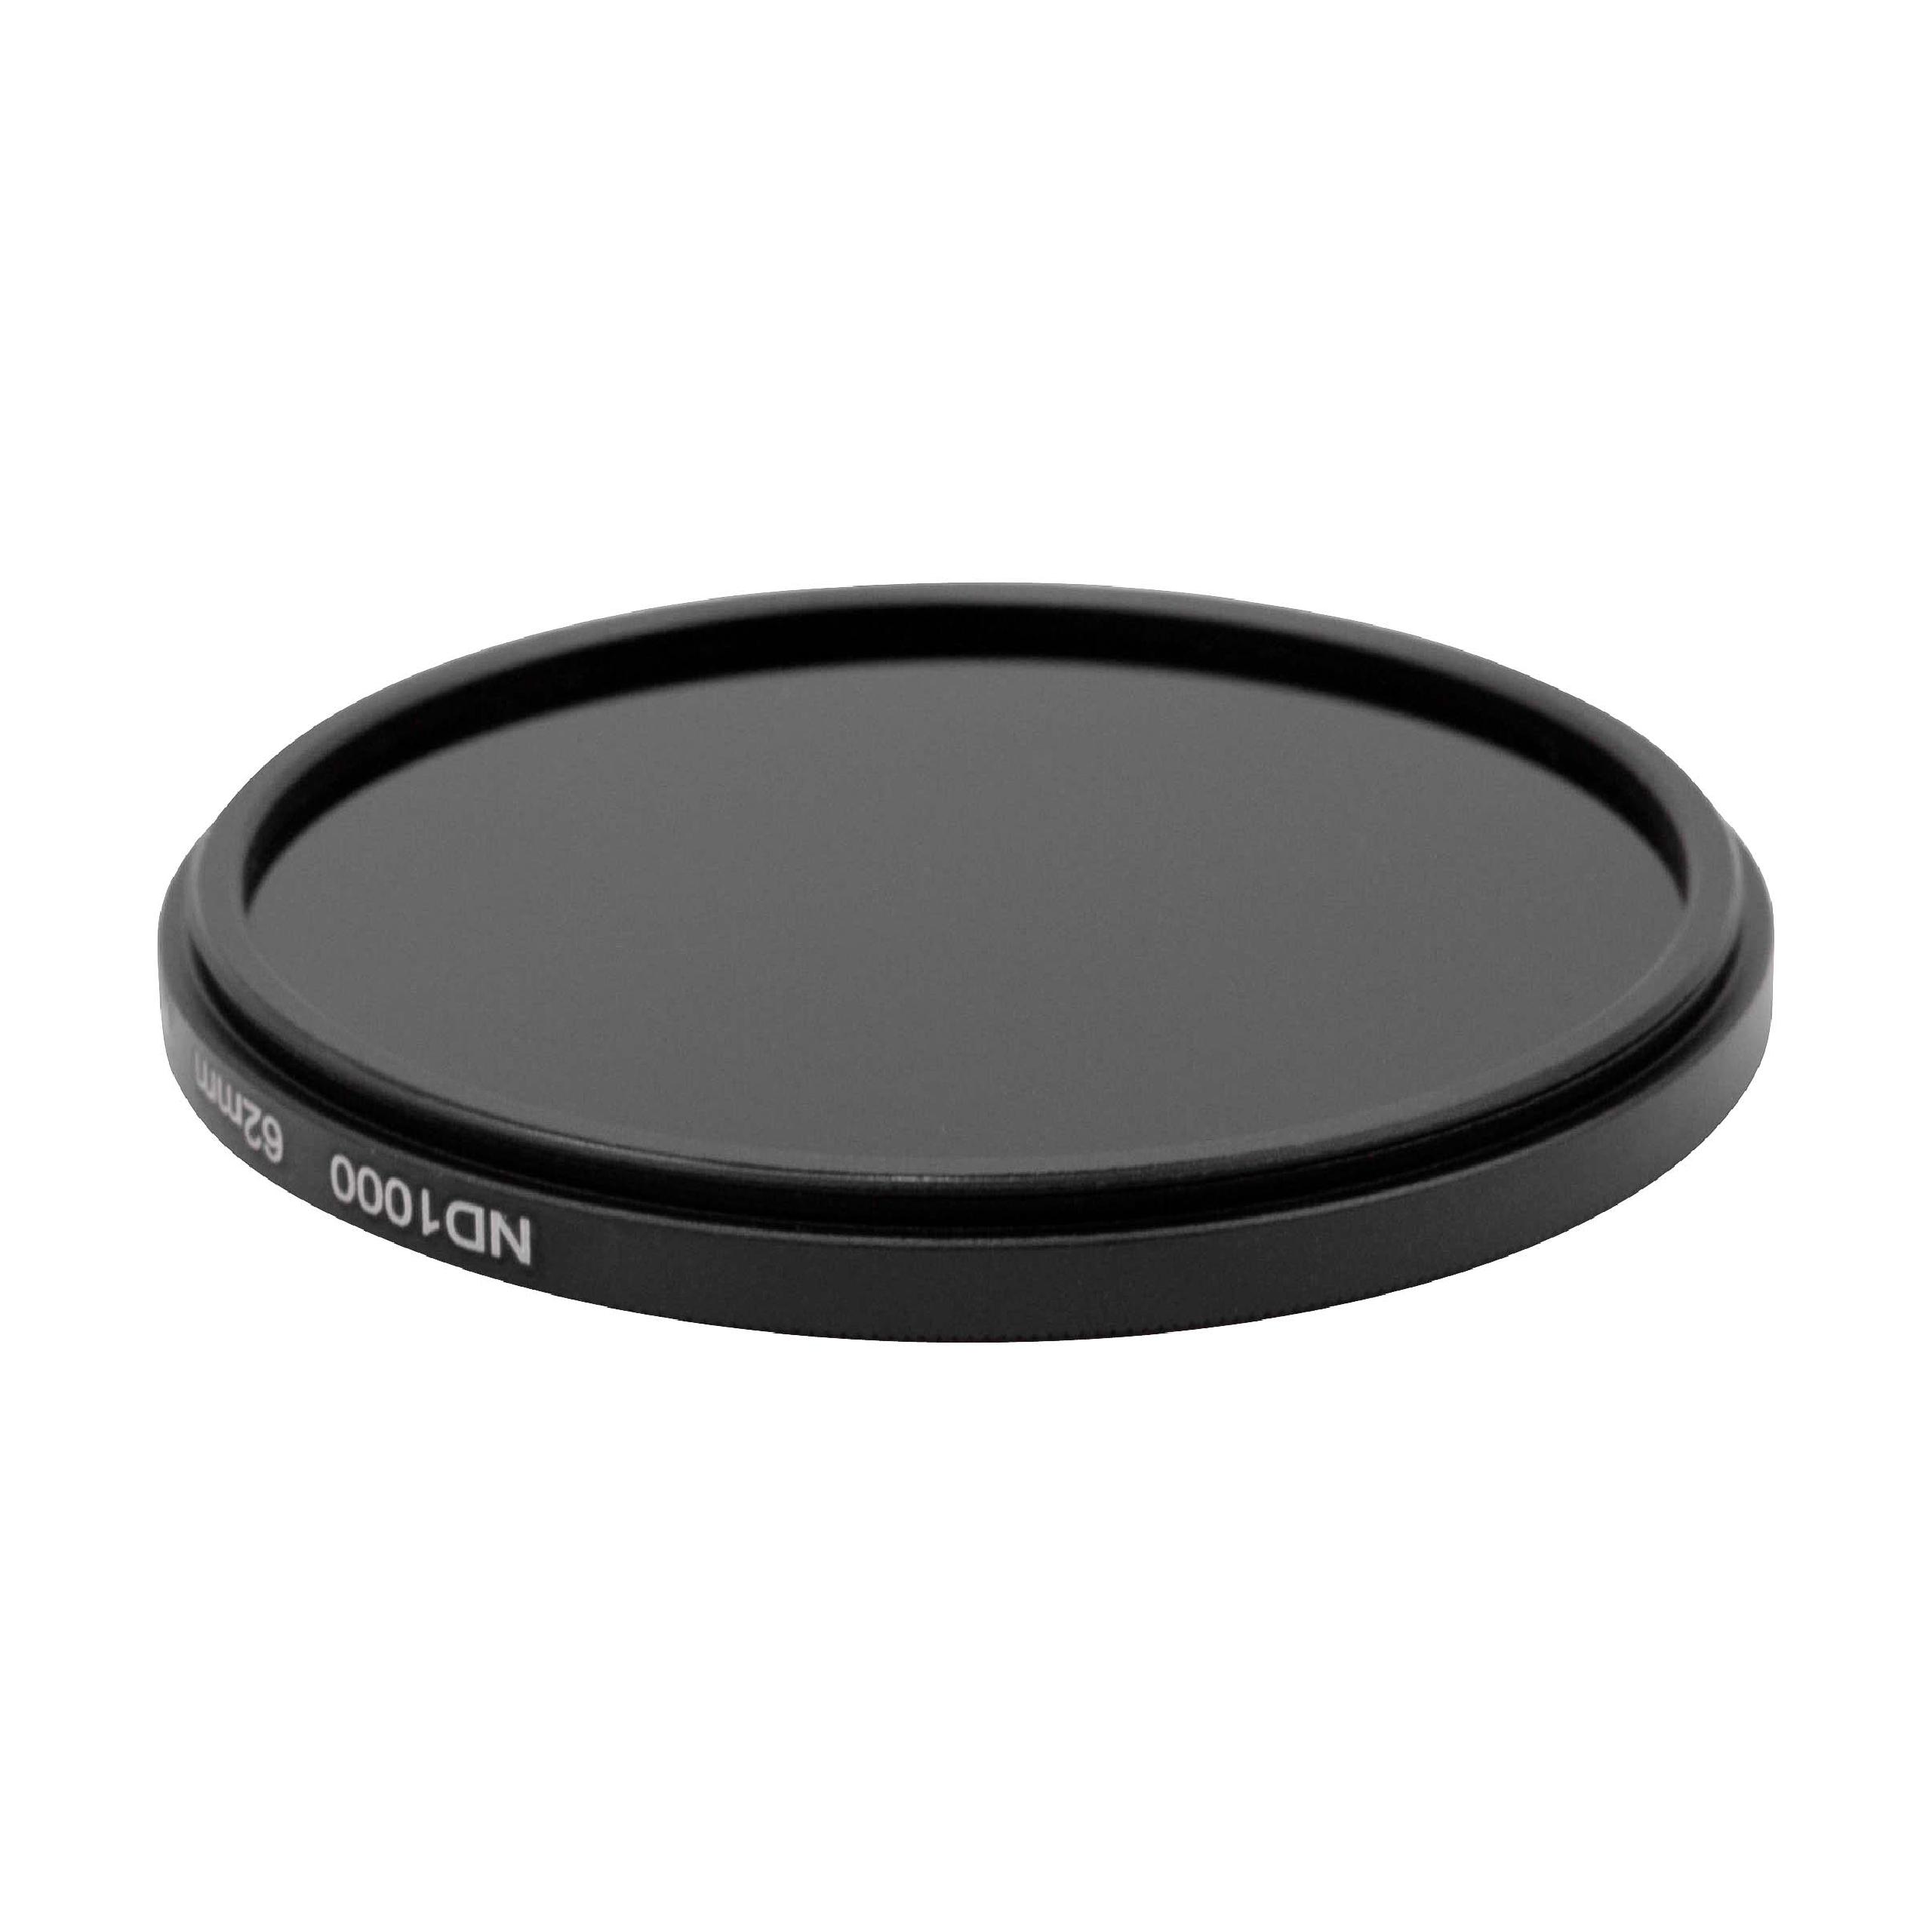 Filtre ND 1000 universel pour objectif d'appareil photo de 62 mm de diamètre – Filtre gris